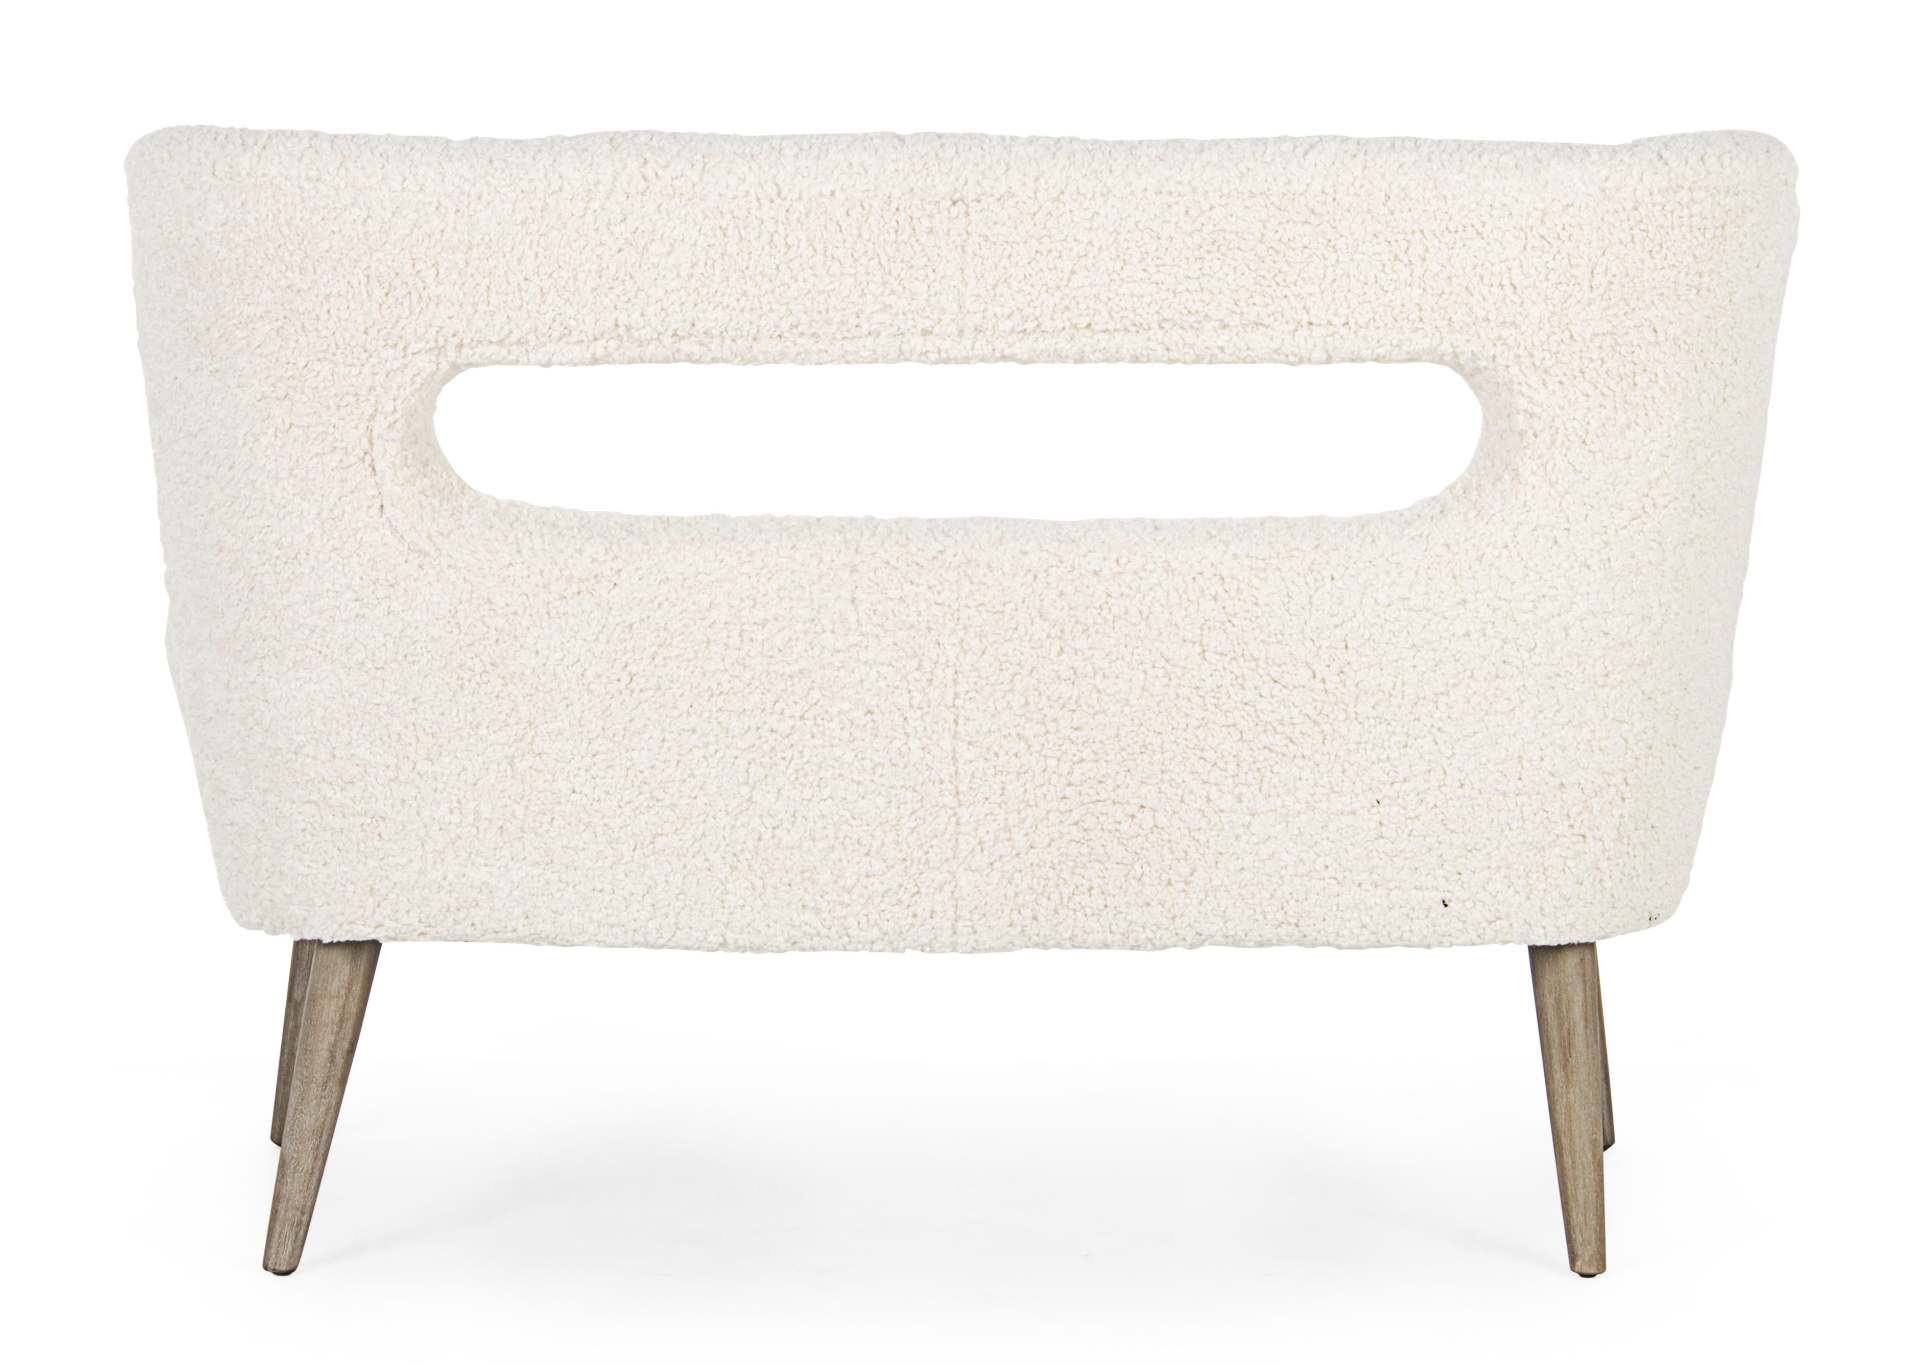 Das Sofa Cortina überzeugt mit seinem modernen Design. Gefertigt wurde es aus Teddy Stoff, welcher einen weißen Farbton besitzt. Das Gestell ist aus Kiefernholz und hat eine natürliche Farbe. Das Sofa ist in der Ausführung als 2-Sitzer. Die Breite beträgt